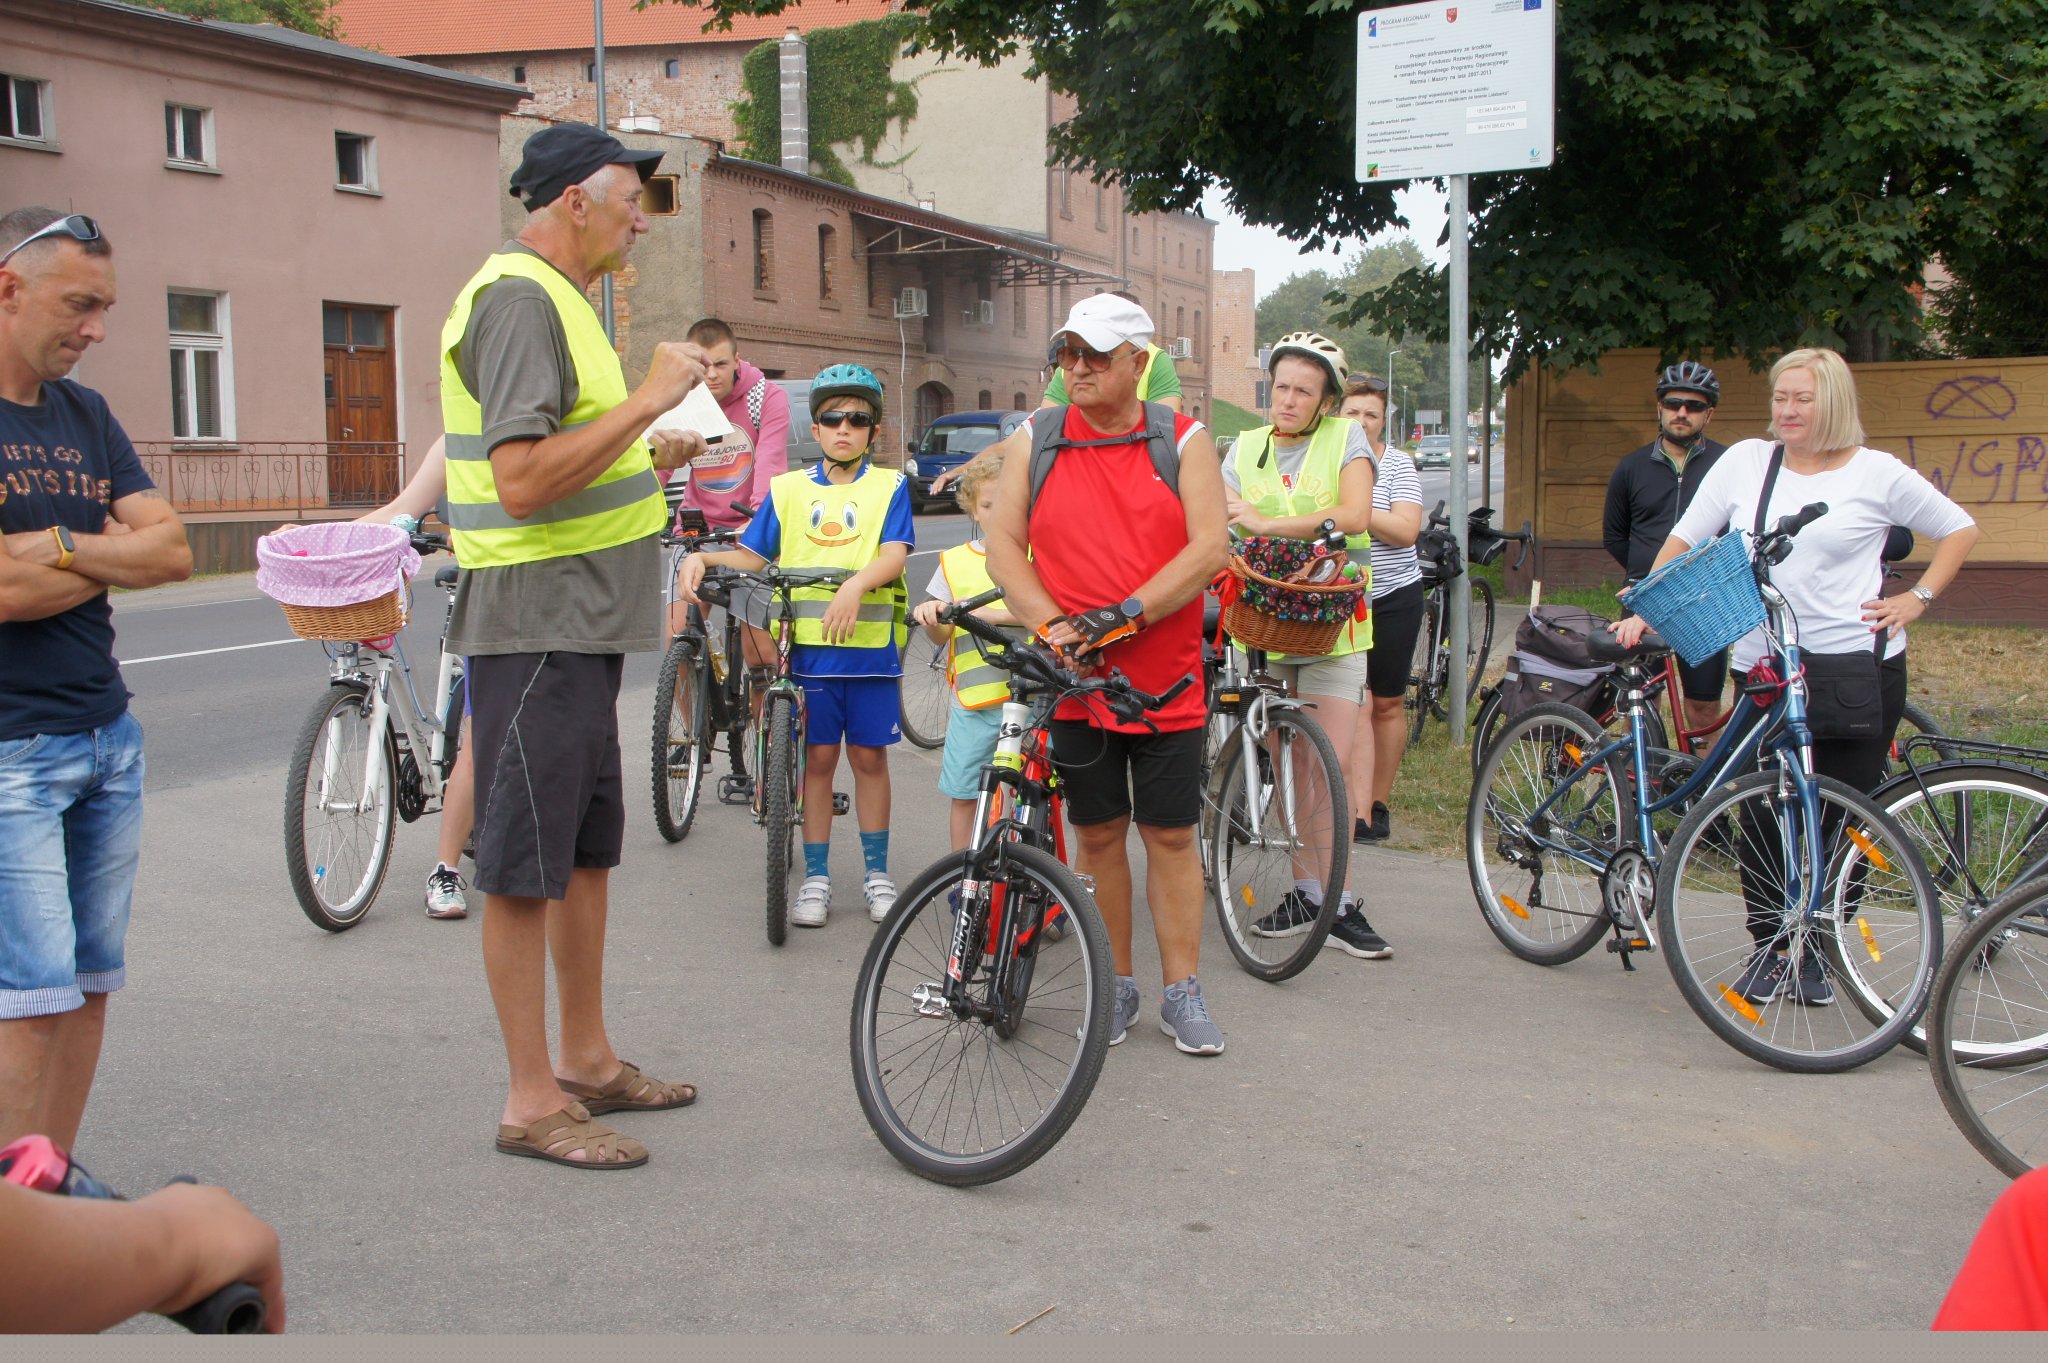 zbiórka uczestników rajdu rowerowego przy ulicy mławskiej